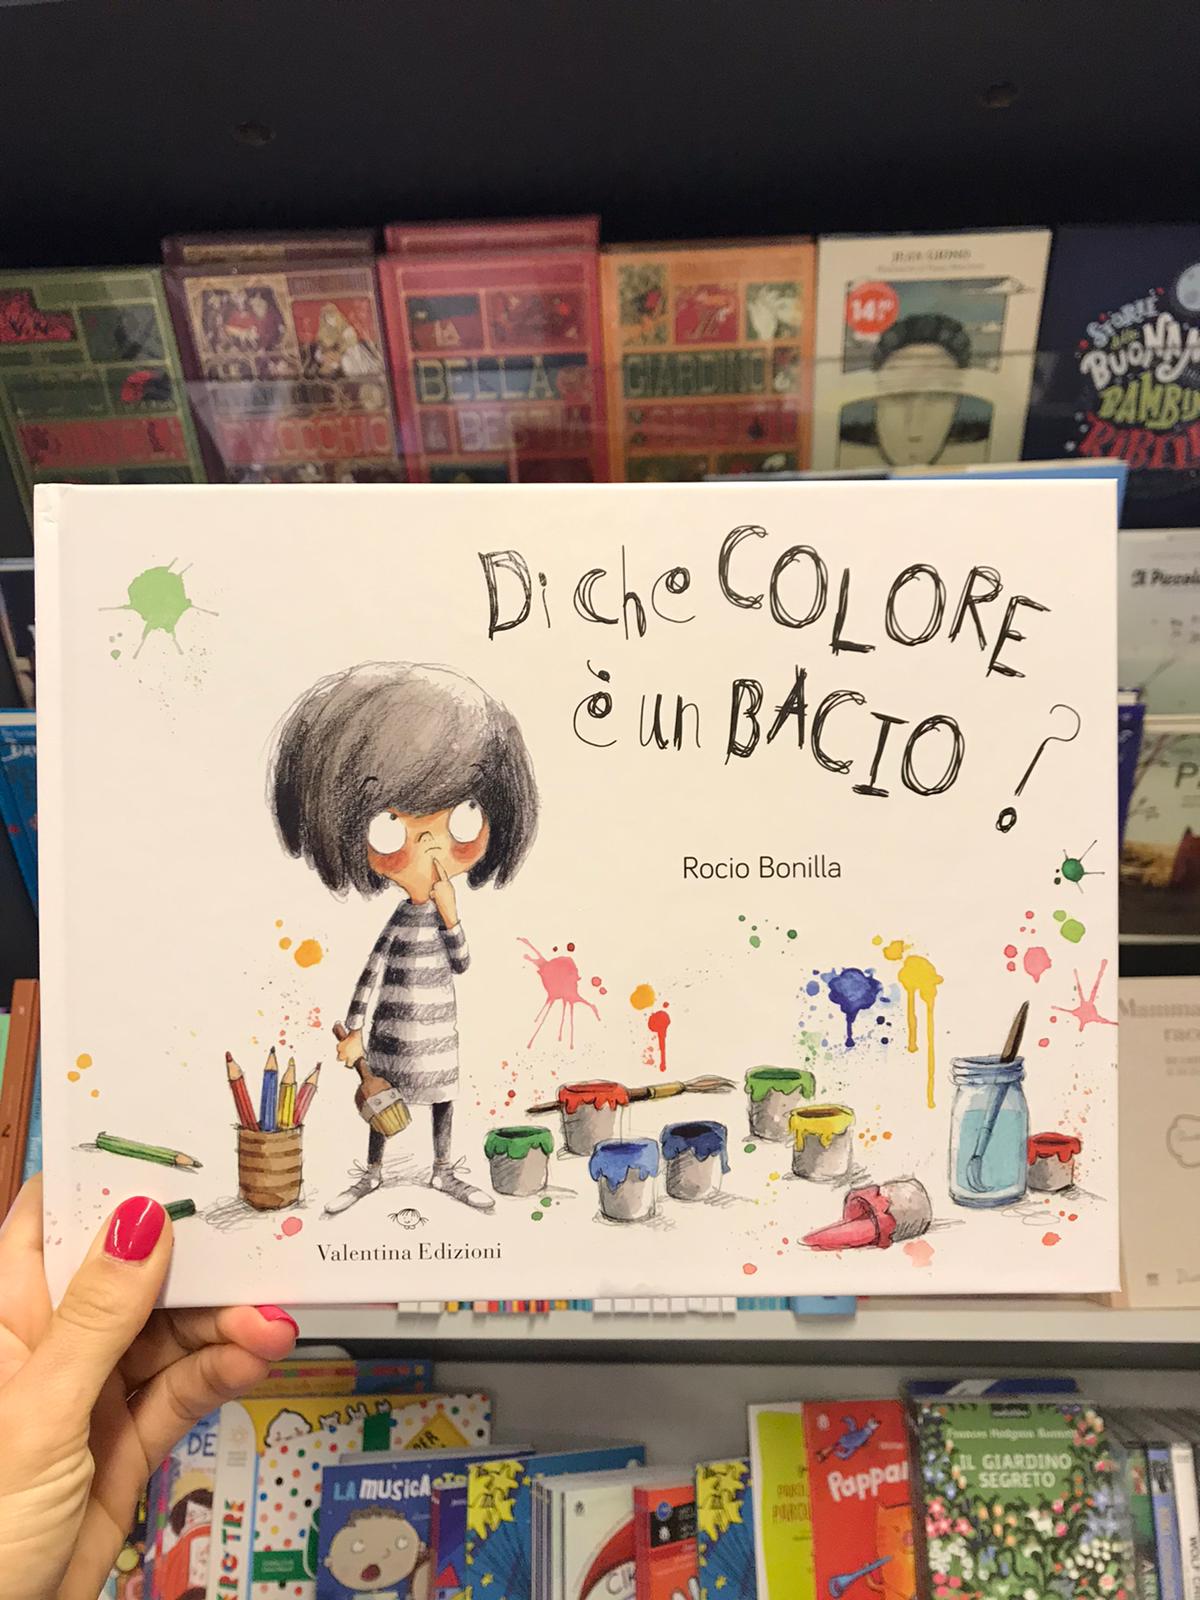 DI CHE COLORE E' UN BACIO - Libreria Altern@tiva Trento